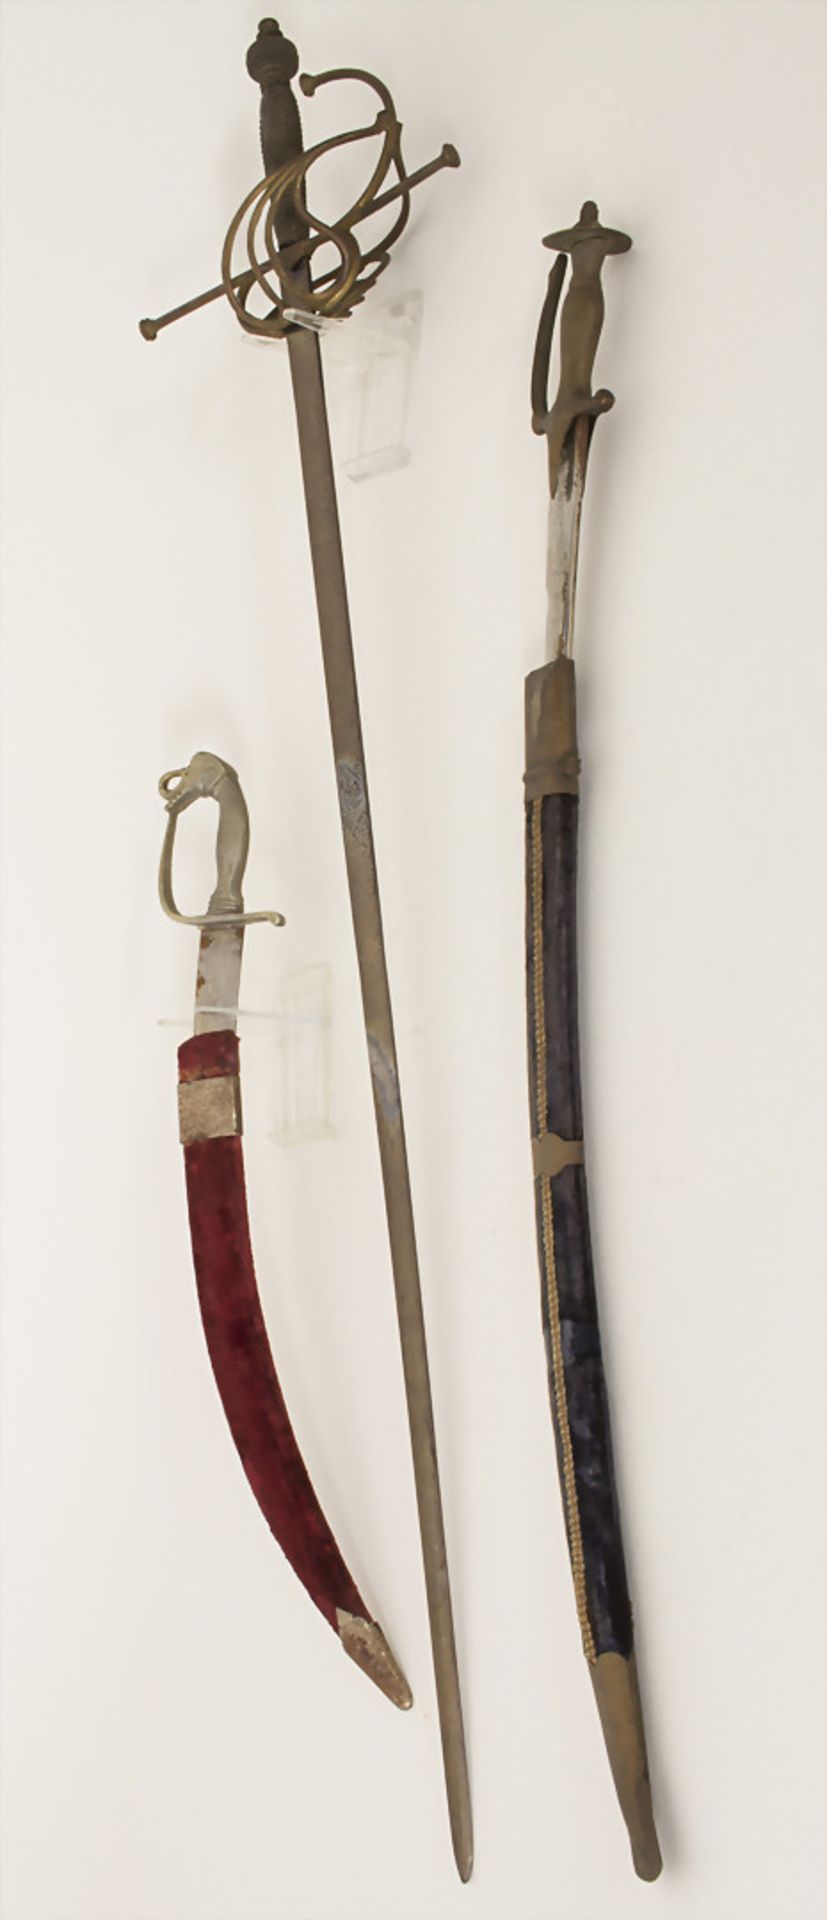 2 Kurzschwerter und ein Degen, Indien, 20 Jh.Material: Stahl, Messing, Samt,Maße: L. Klinge 35